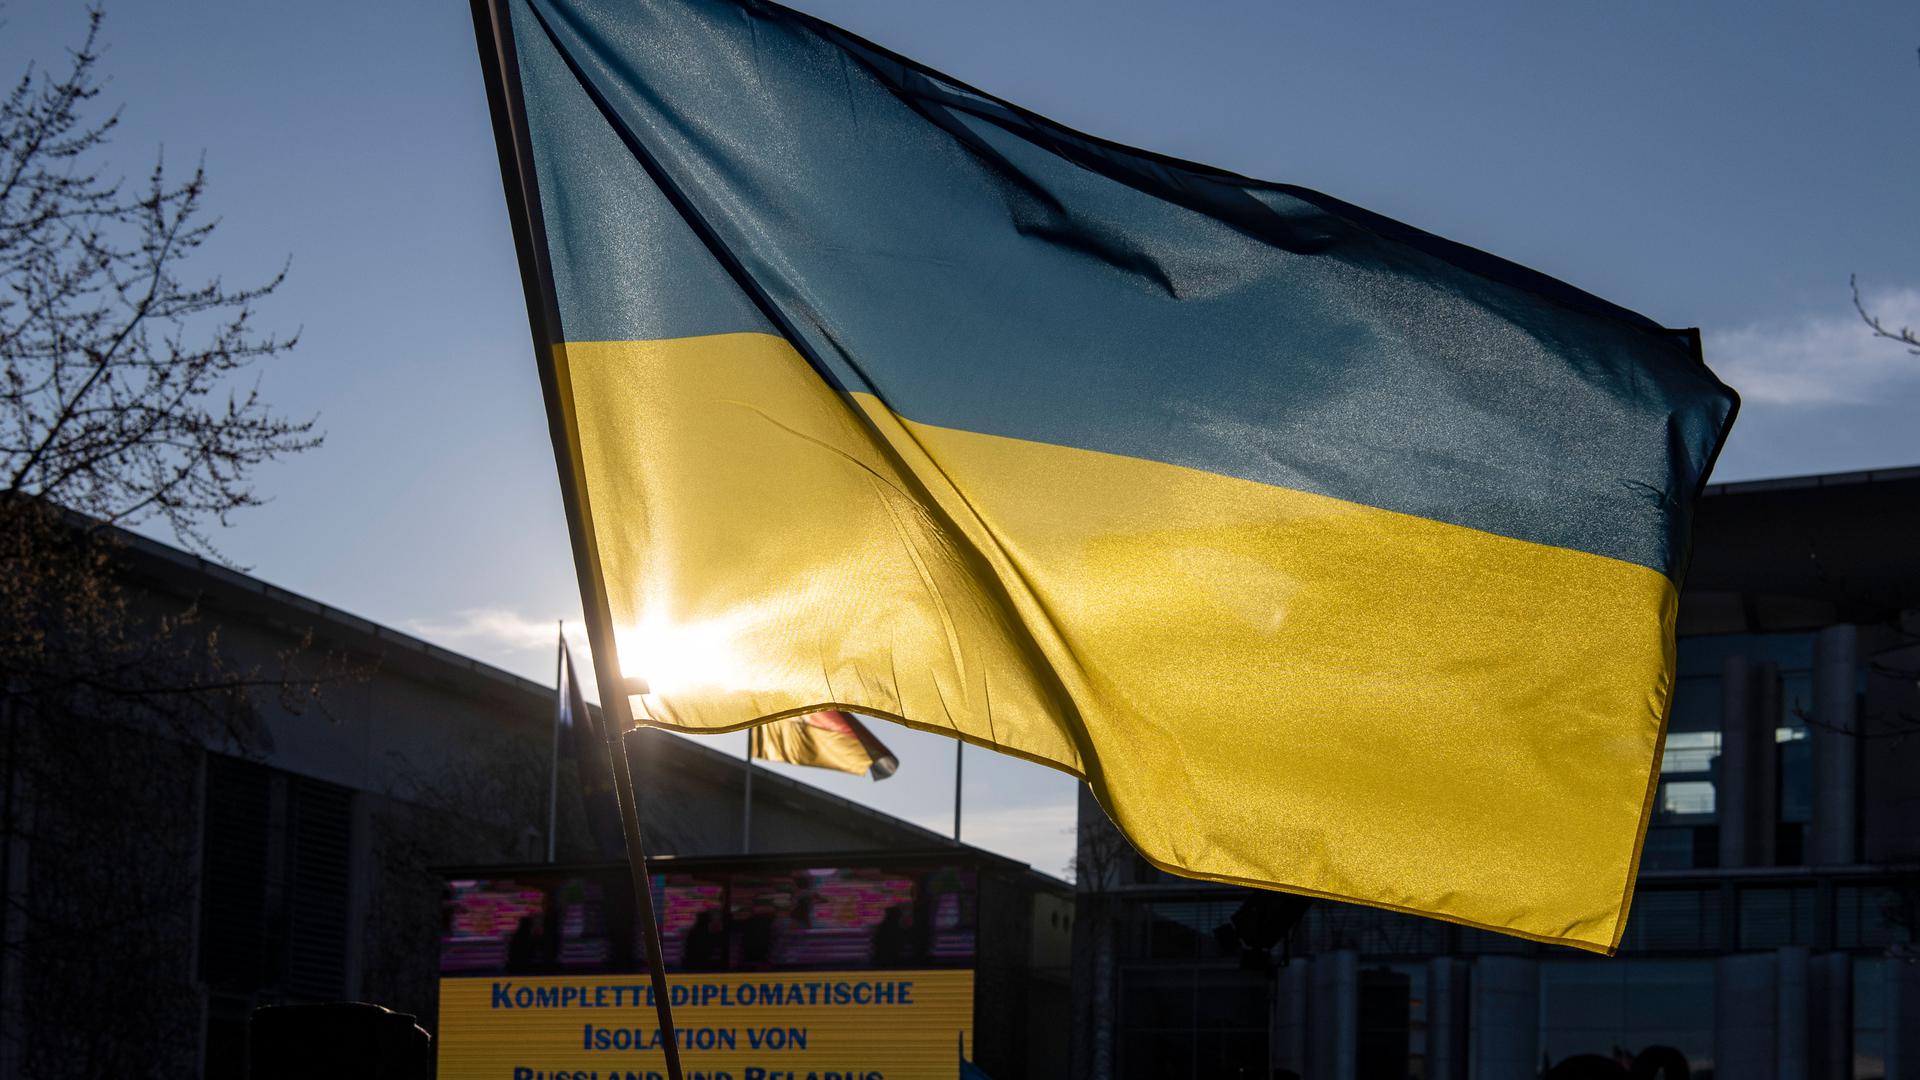 Solidarität: Eine Kundgebung für die Menschen in der Ukraine findet am Sonntag um 17 Uhr auf dem Karlsruher Marktplatz statt. Auch BVG-Präsident Stephan Harbarth will dabei sprechen.